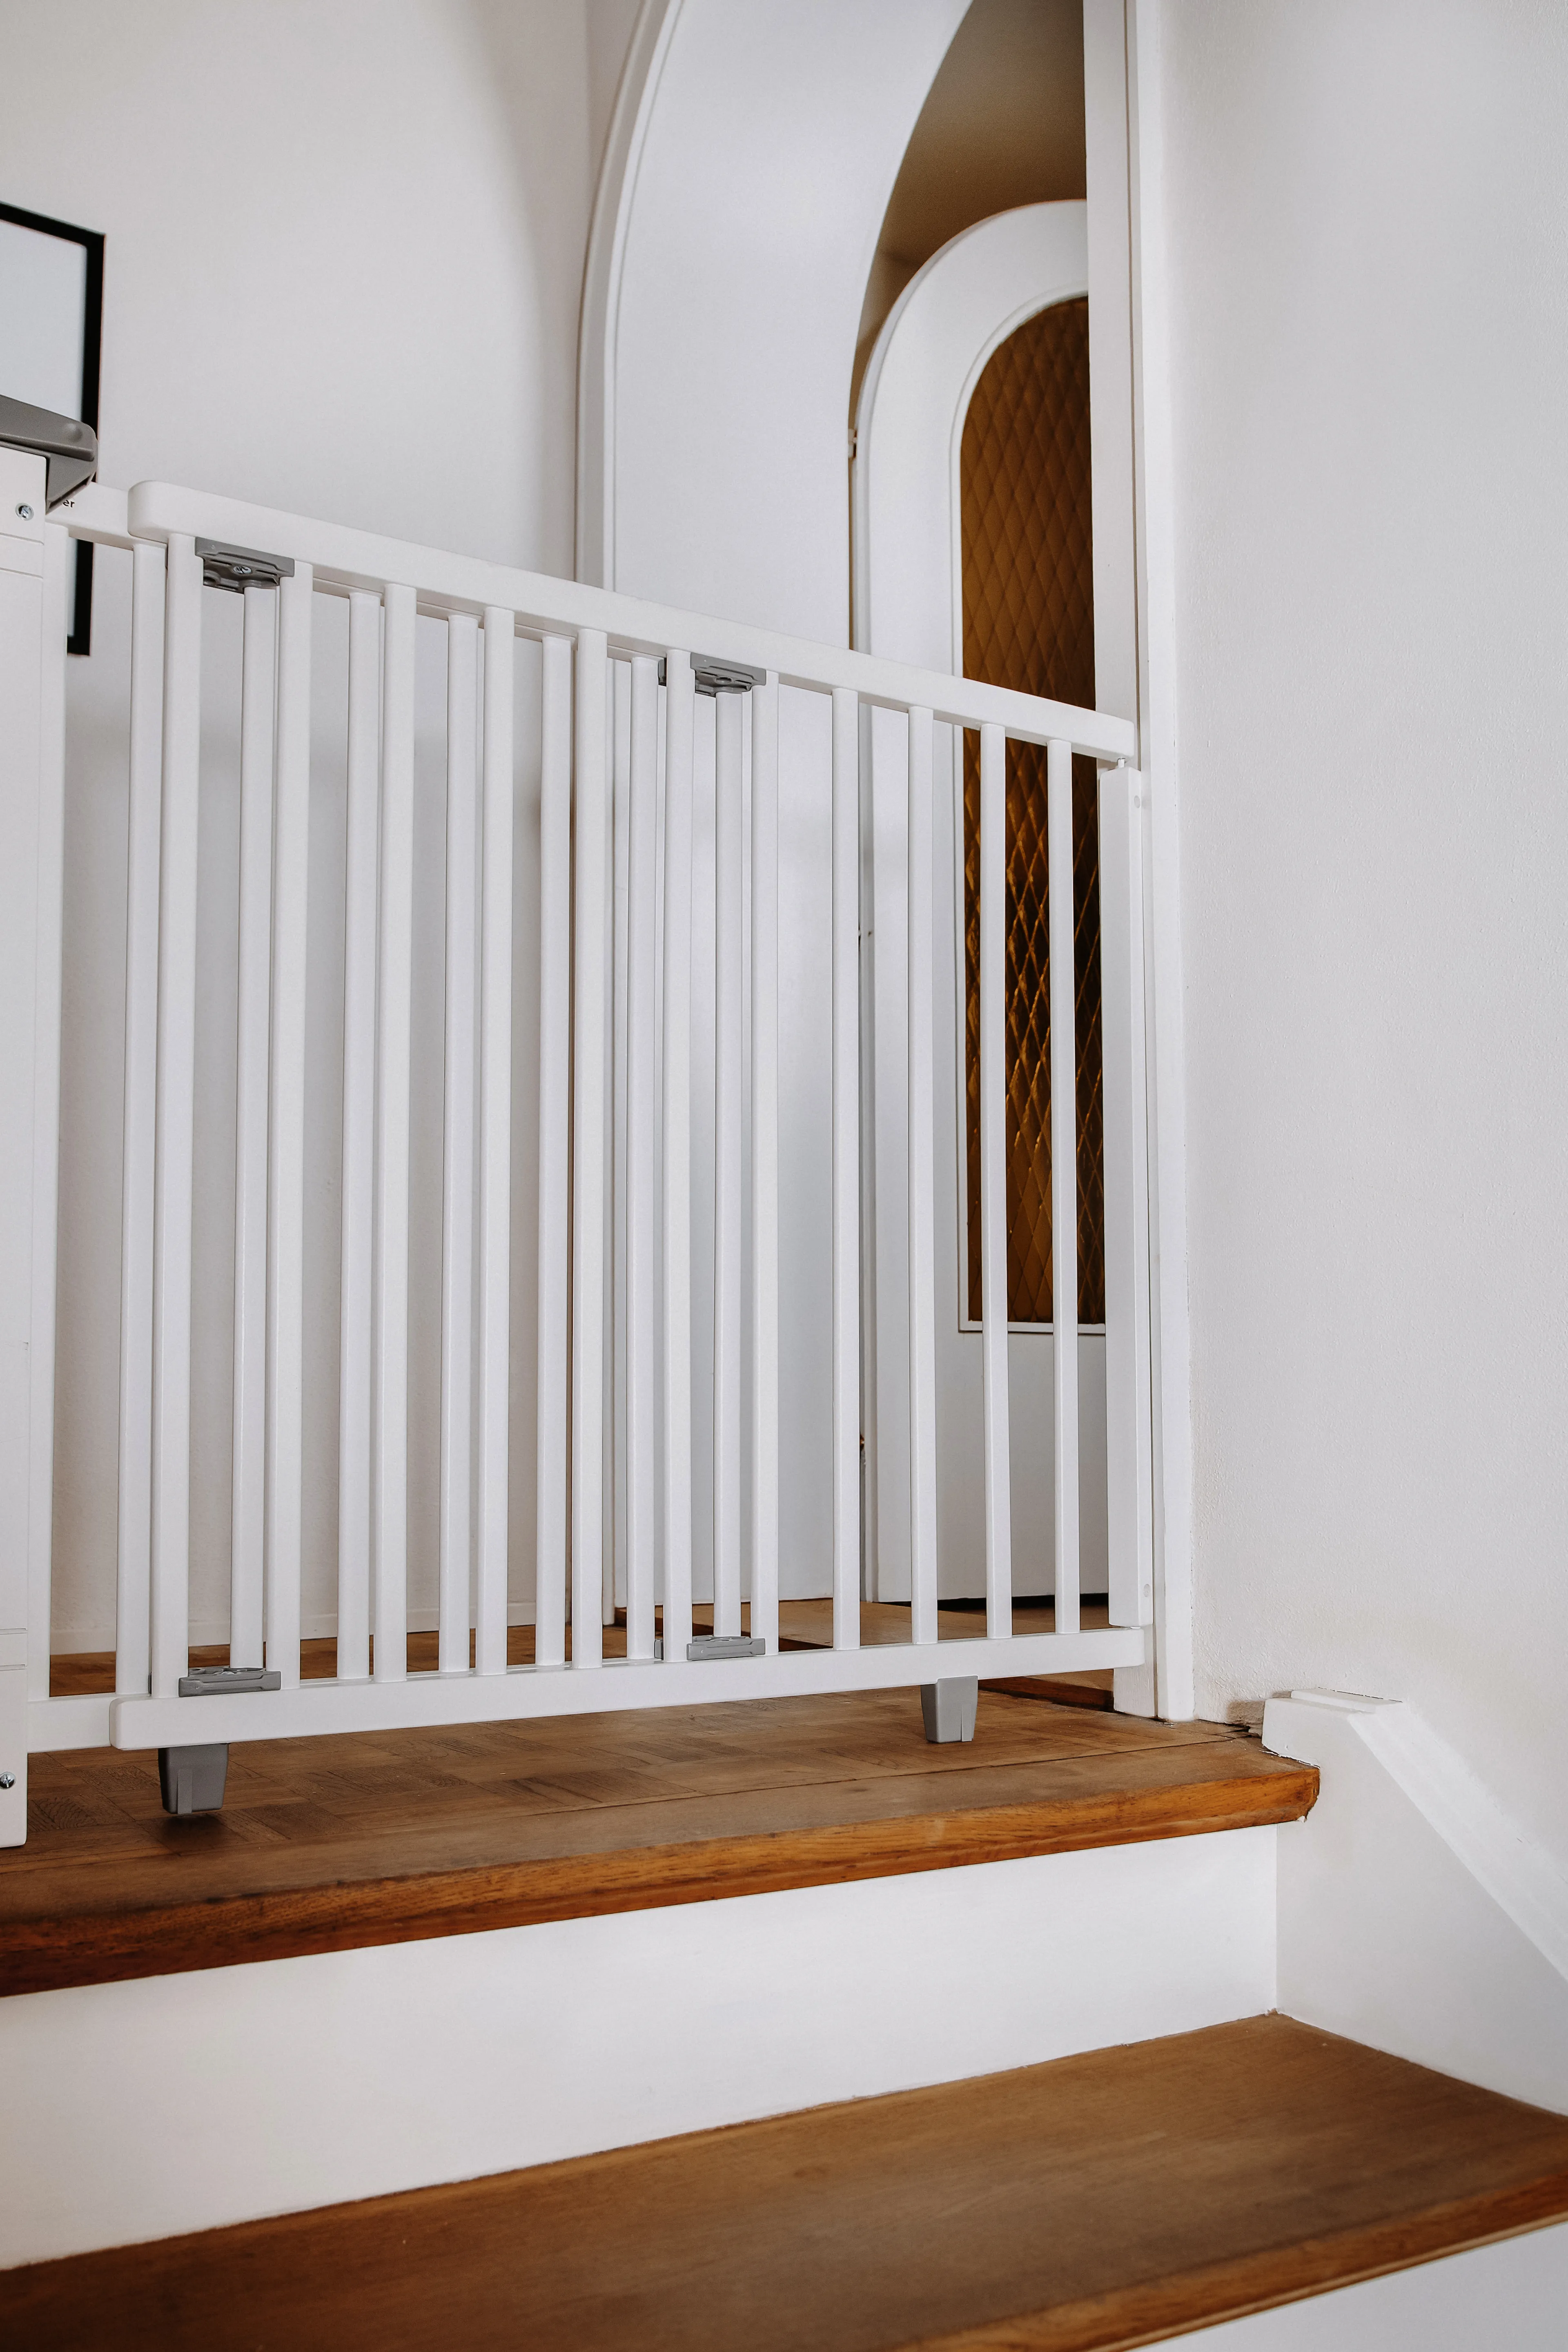 Treppenschutzgitter 2735+ für Öffnungen von 95 cm - 135 cm aus Holz